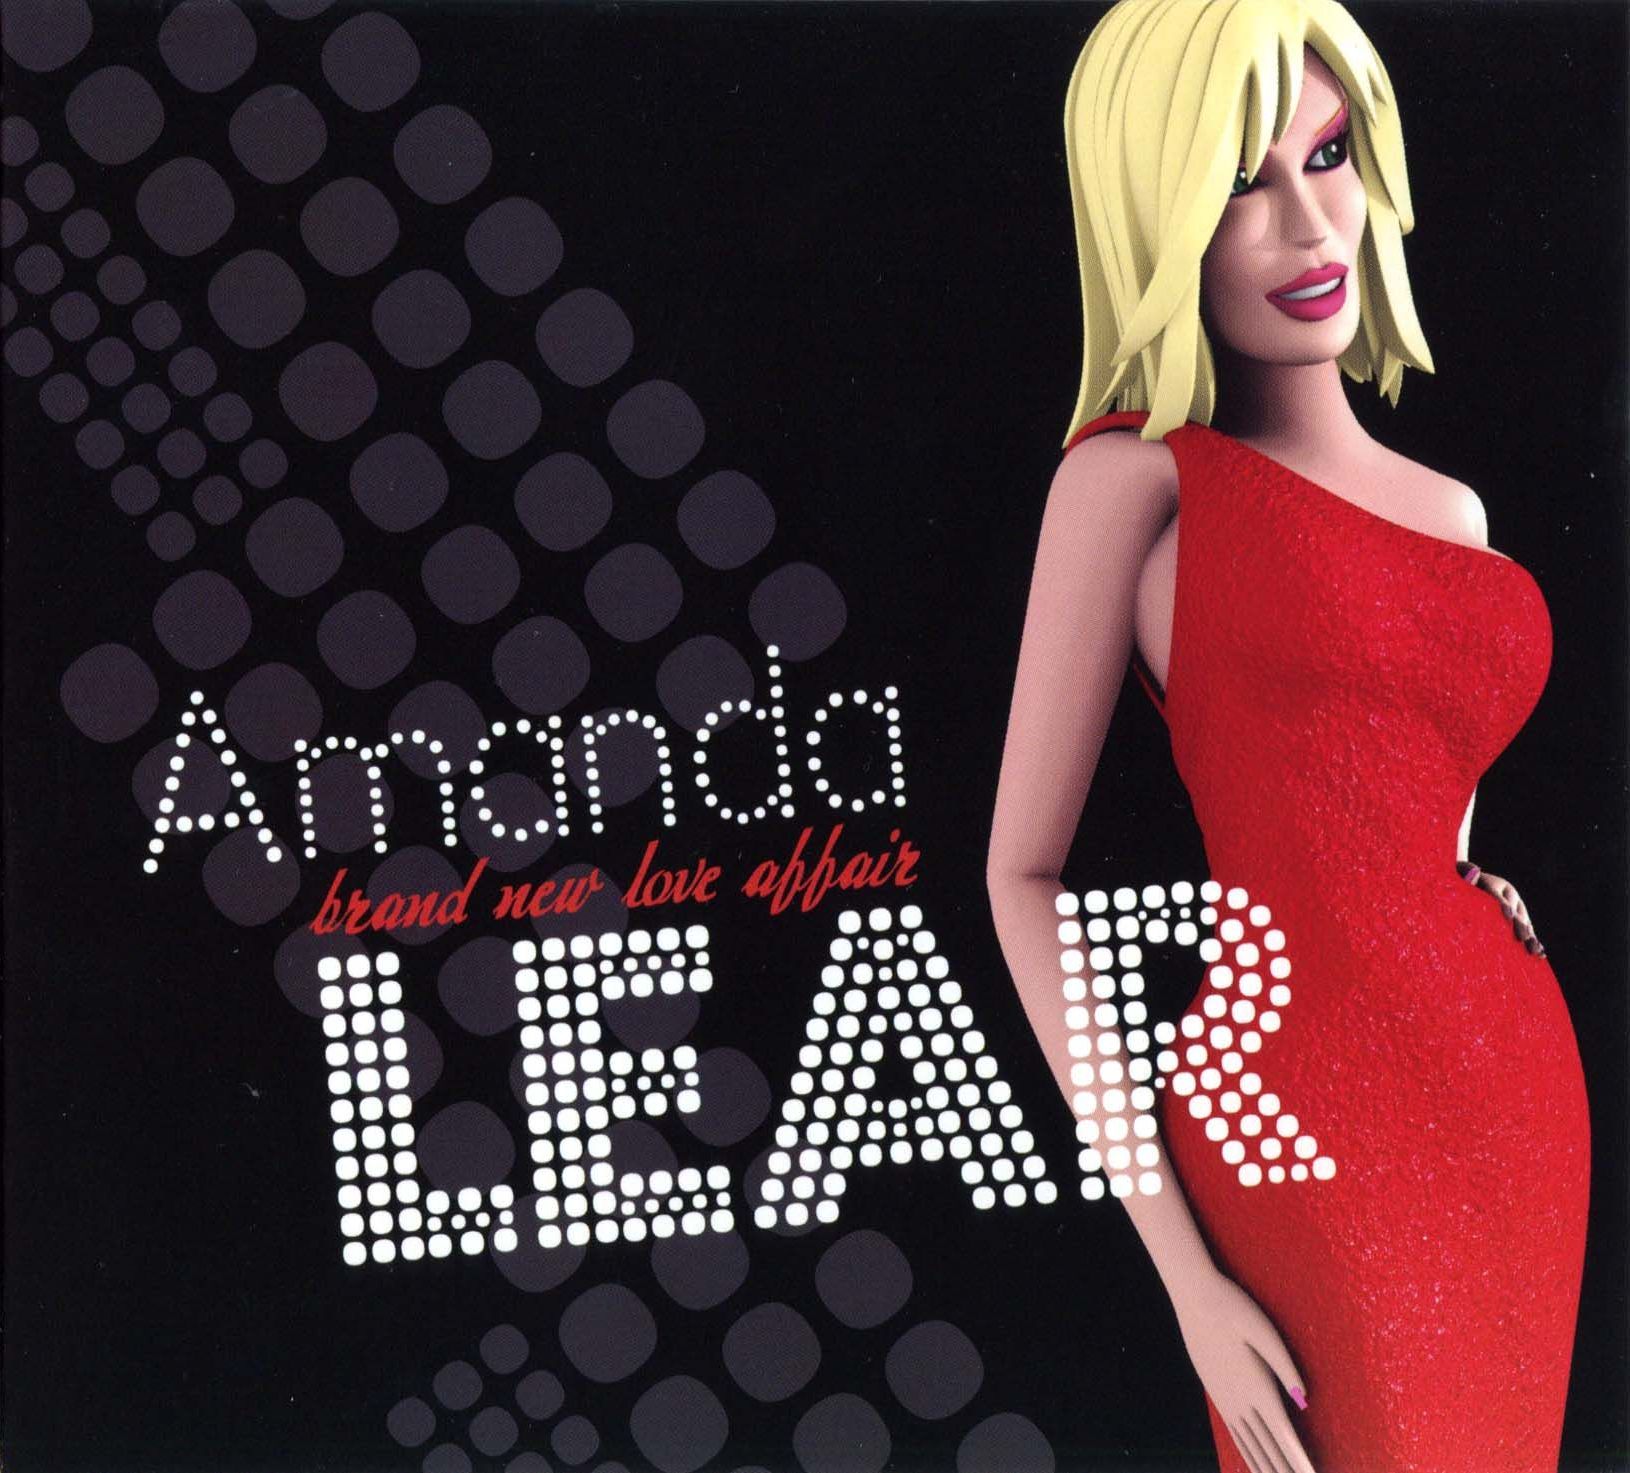 My new lover. Amanda Lear. Amanda Lear обтягивающее платье. Amanda Lear - brief encounter (2009). Amanda Lear House.